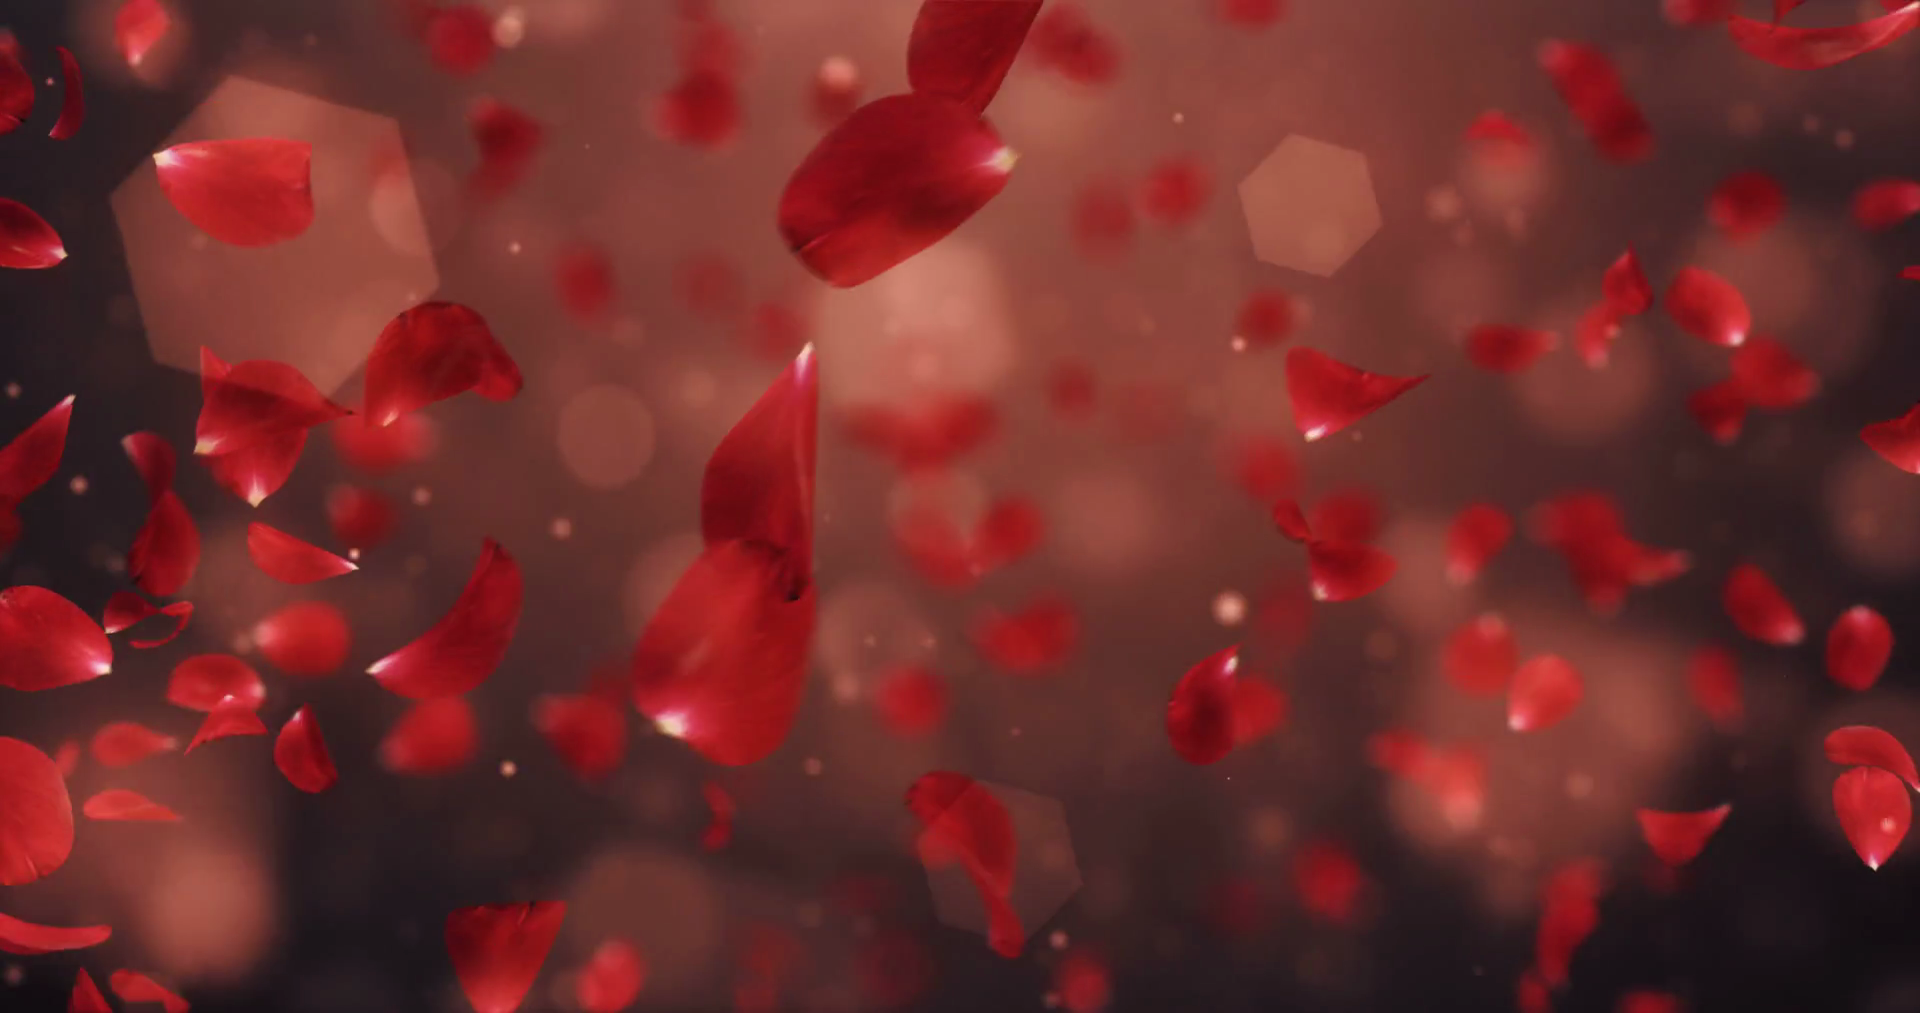 Whirl Flying Romantic Dark Red Rose Flower Petals Background Loop 4k ...